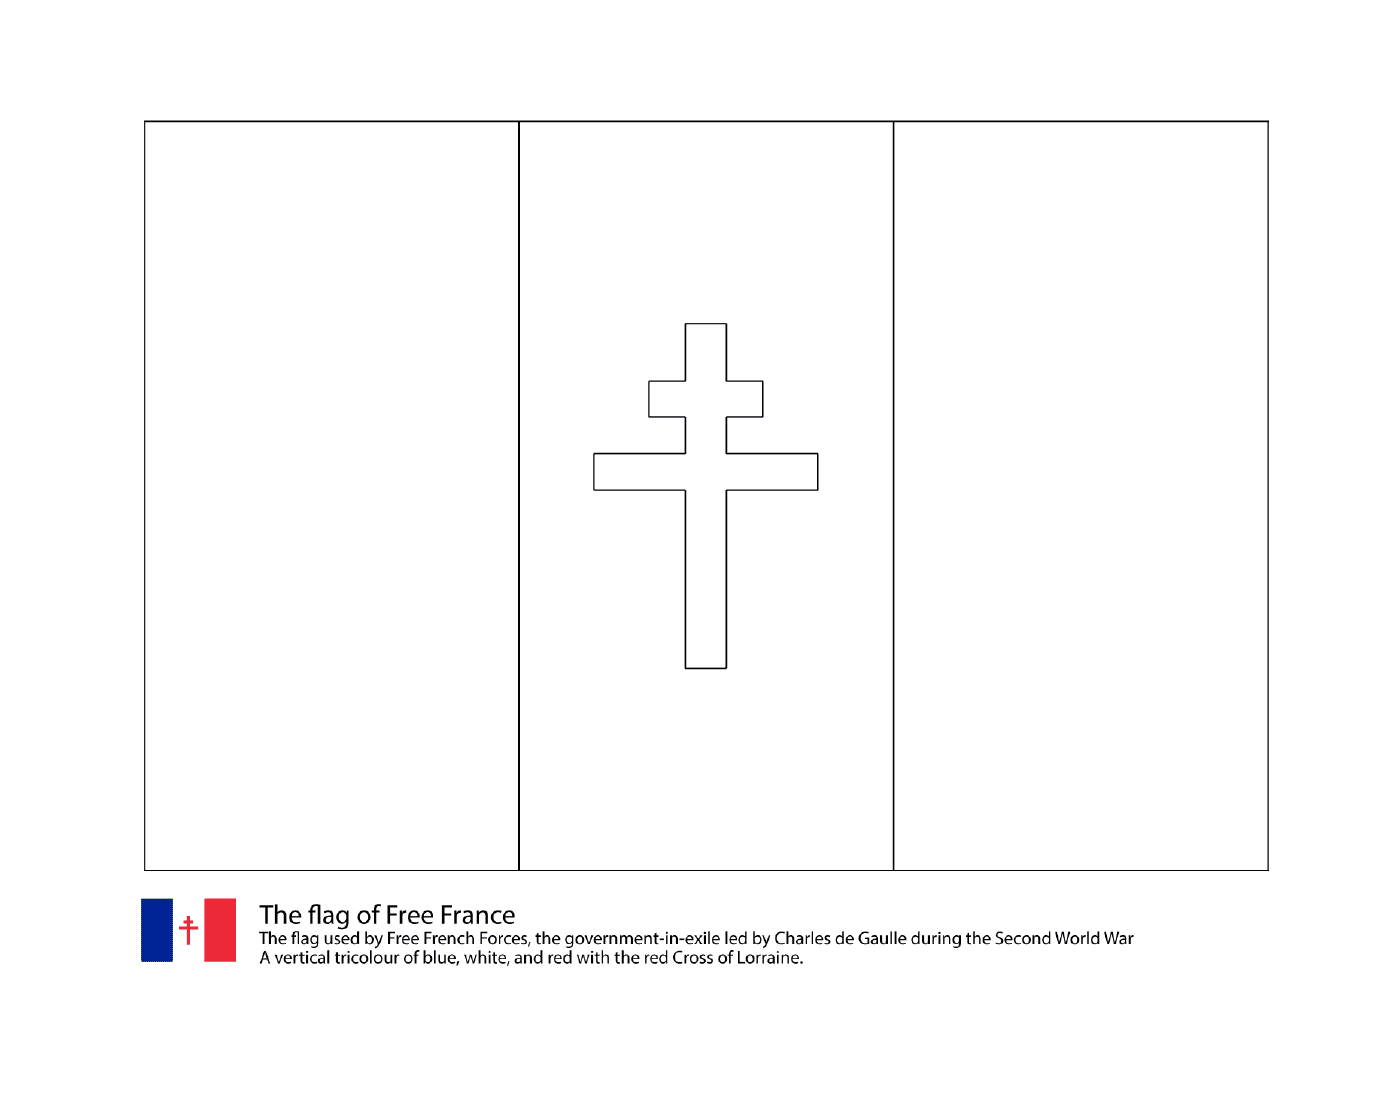 drapeau de la france libre 1940 1944